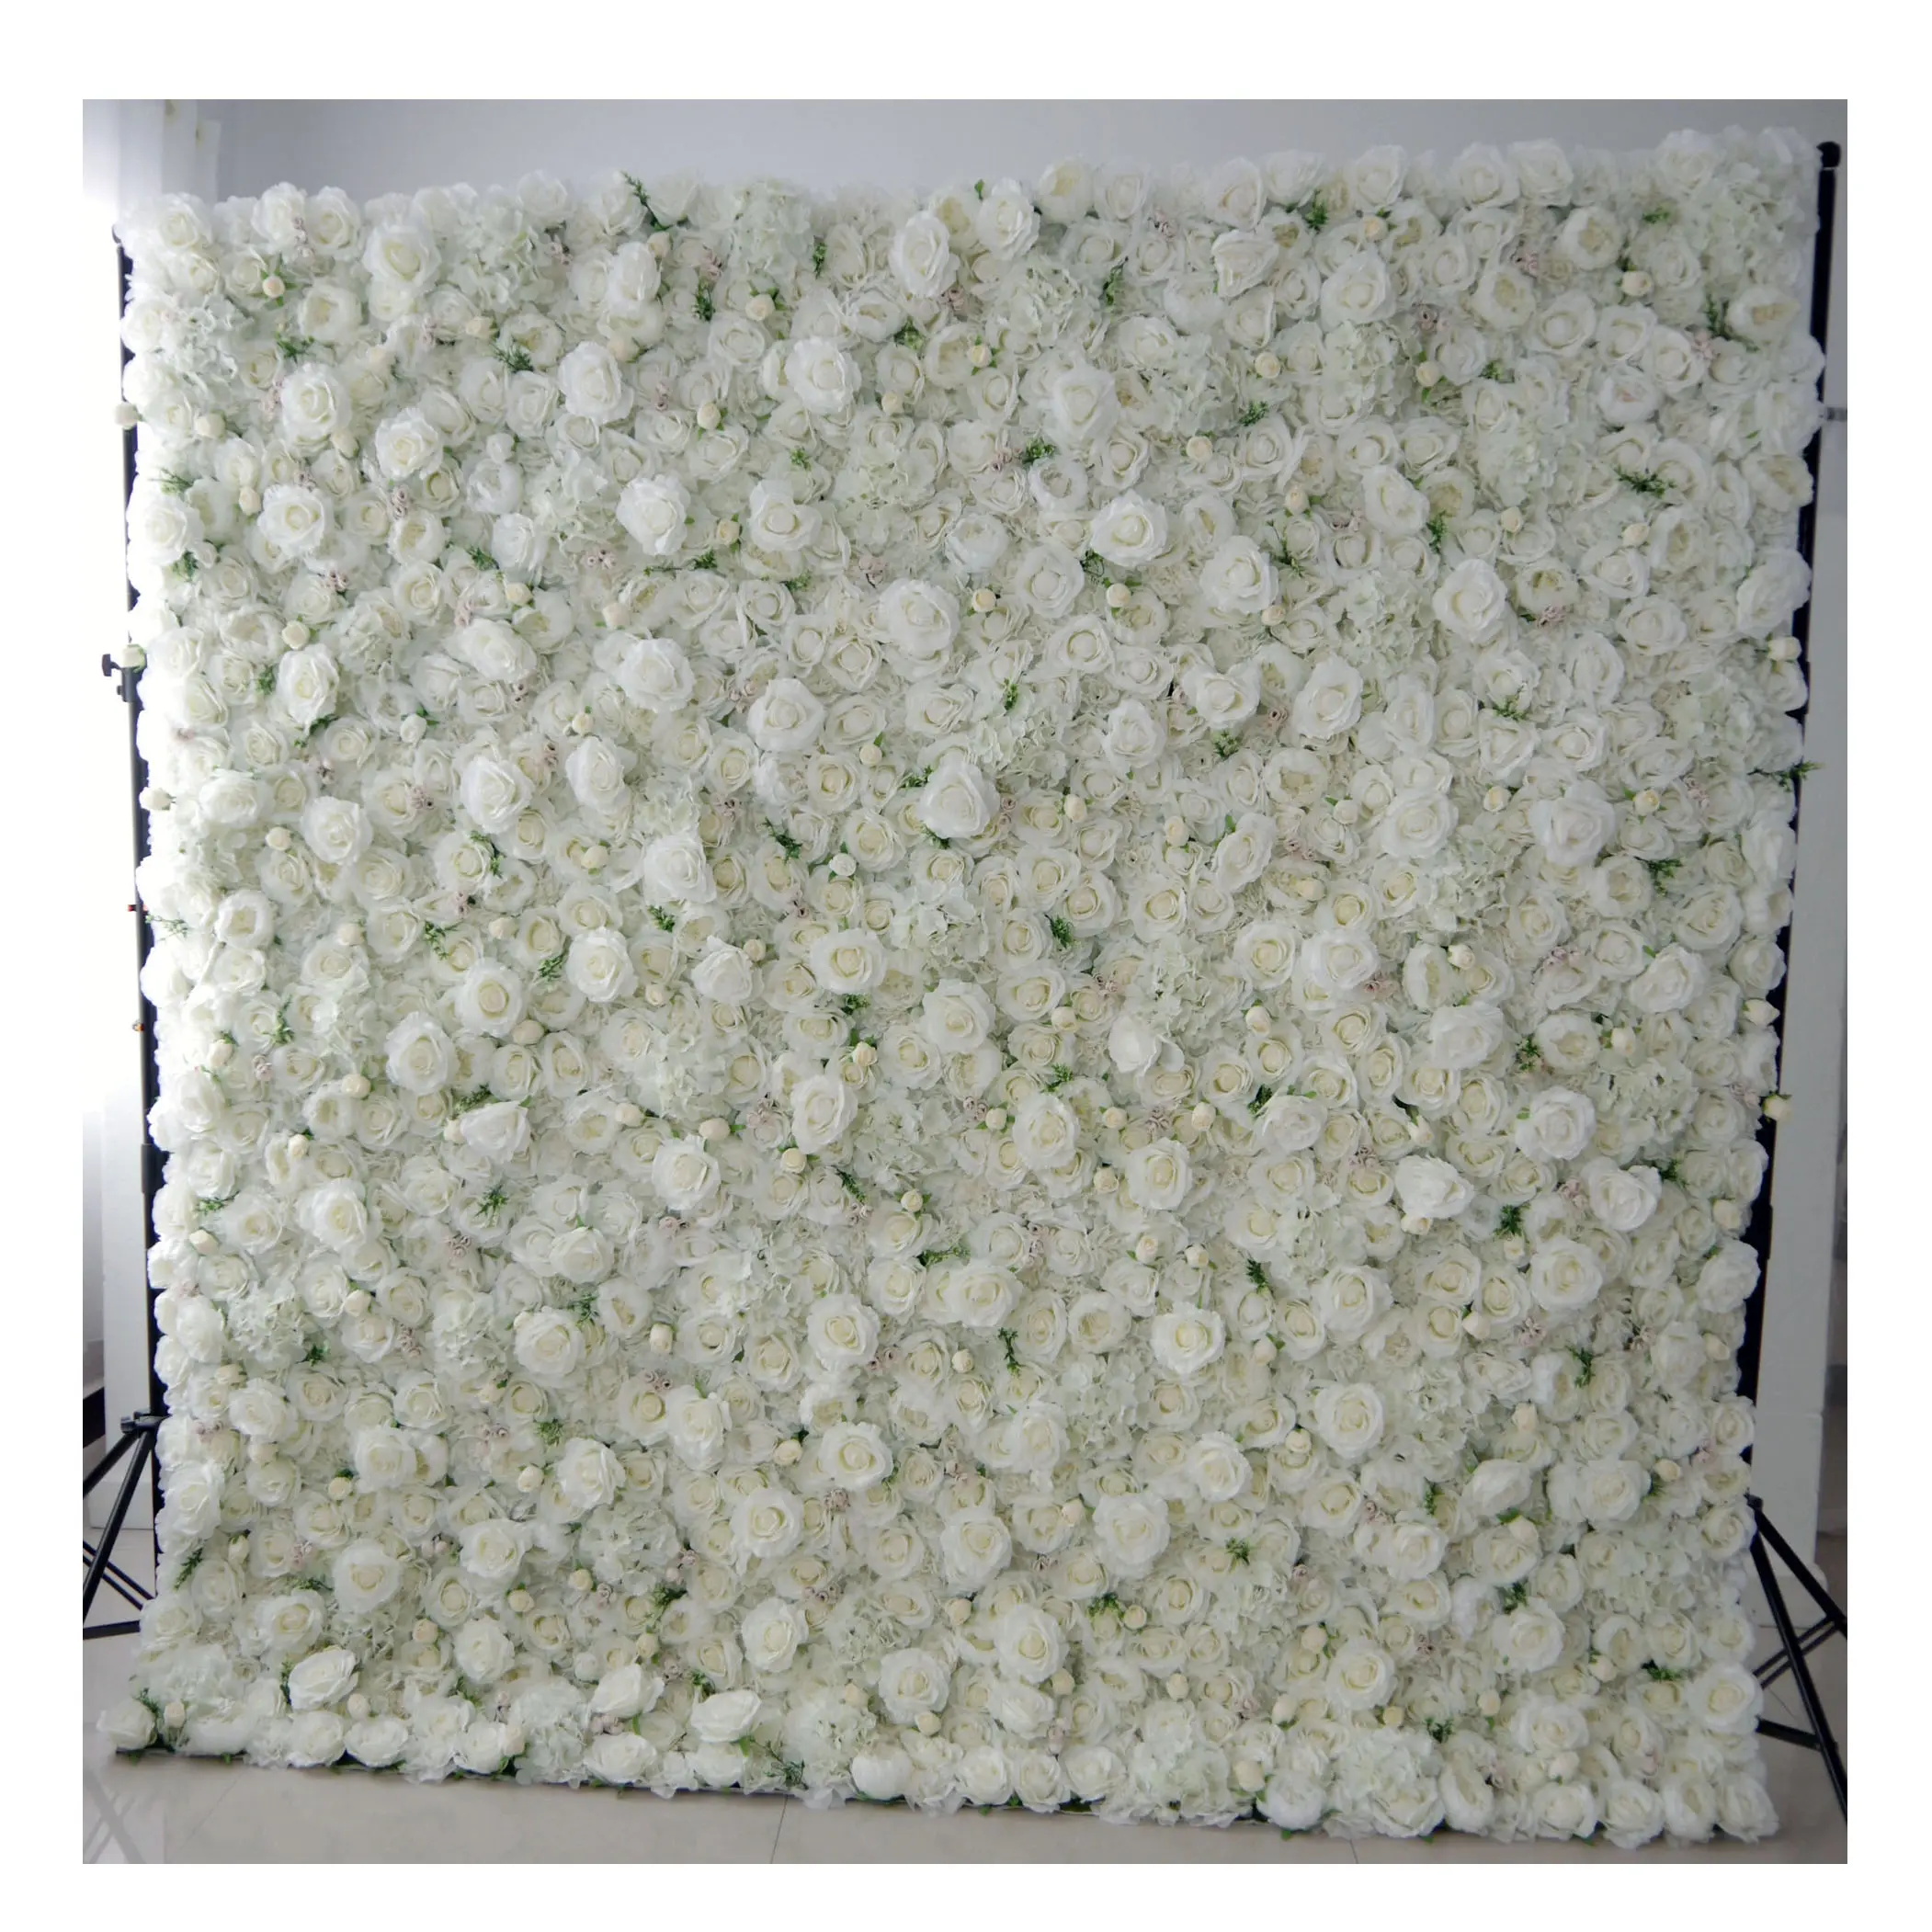 8ftx8ft ฟุต3D เทียมดอกไม้ผ้าไหมผนังแผงสีขาวกุหลาบไฮเดรนเยียผ้ากลิ้งม่านดอกไม้ผนังฉากหลัง